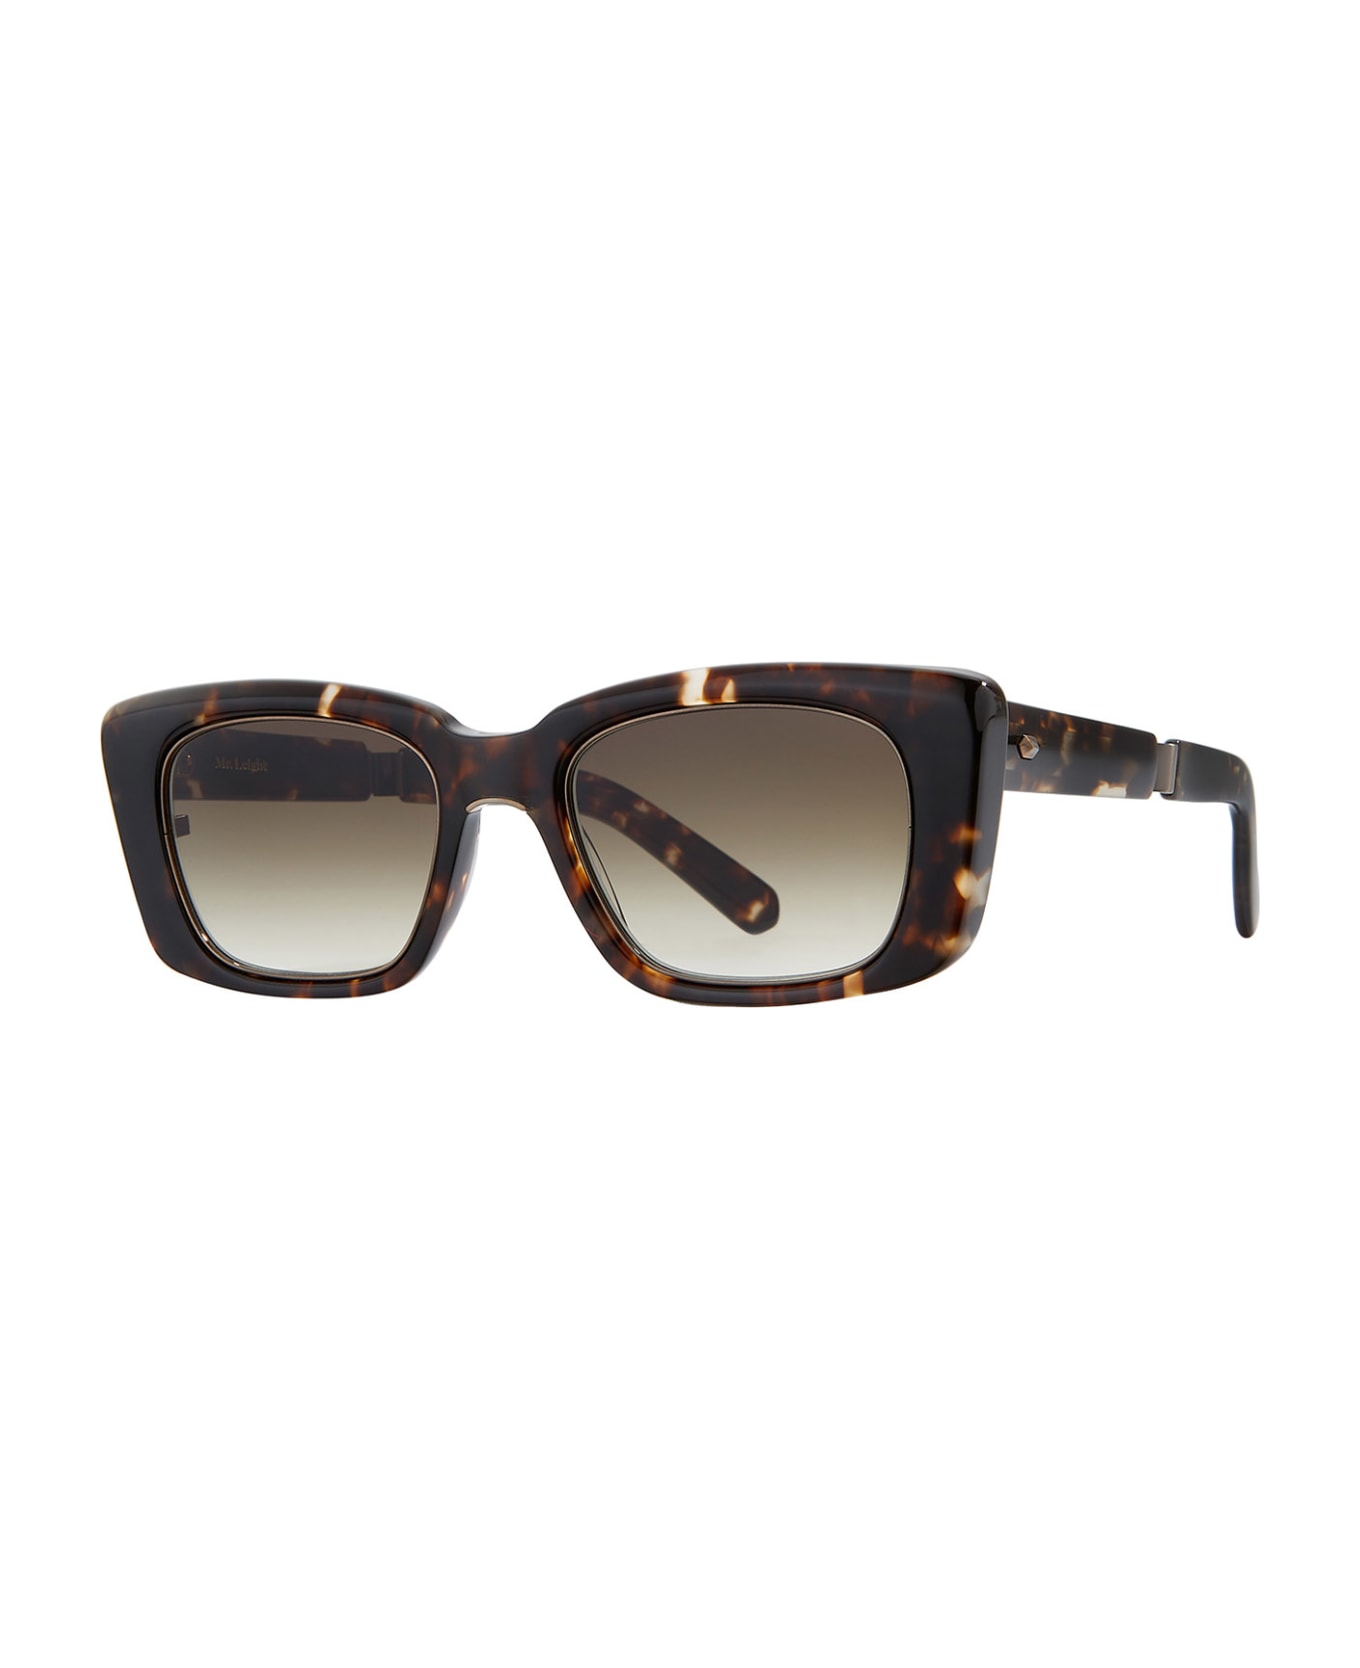 Mr. Leight Carman S Leopard Tortoise Sunglasses - Leopard Tortoise サングラス